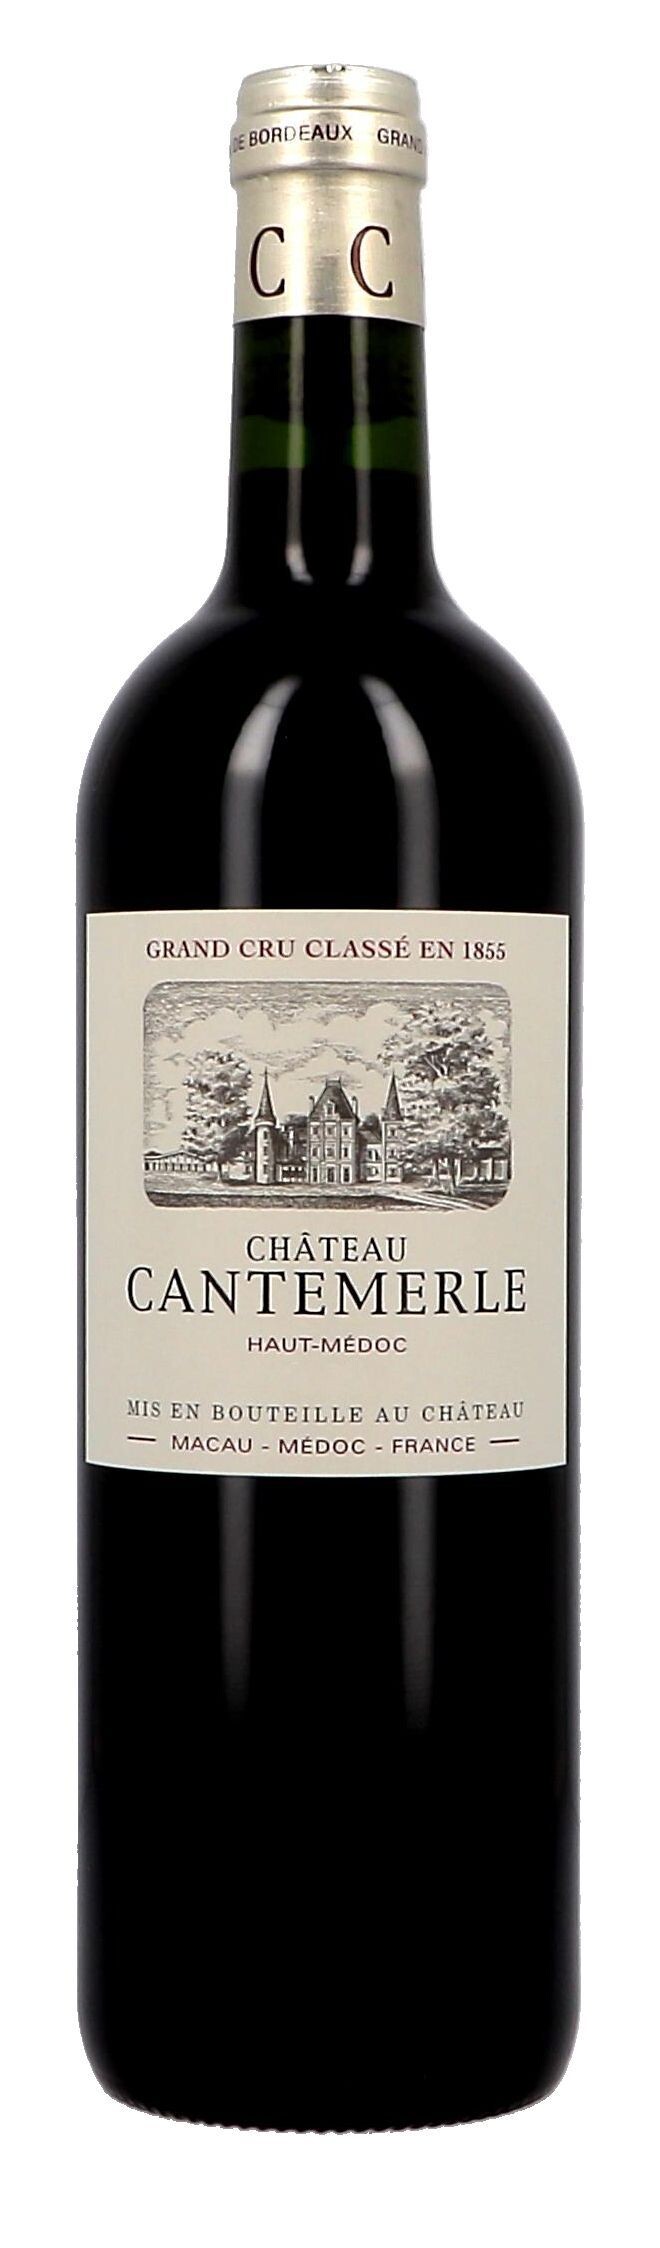 Chateau Cantemerle 75cl 2016 Haut-Medoc Grand Cru Classé (Wijnen)